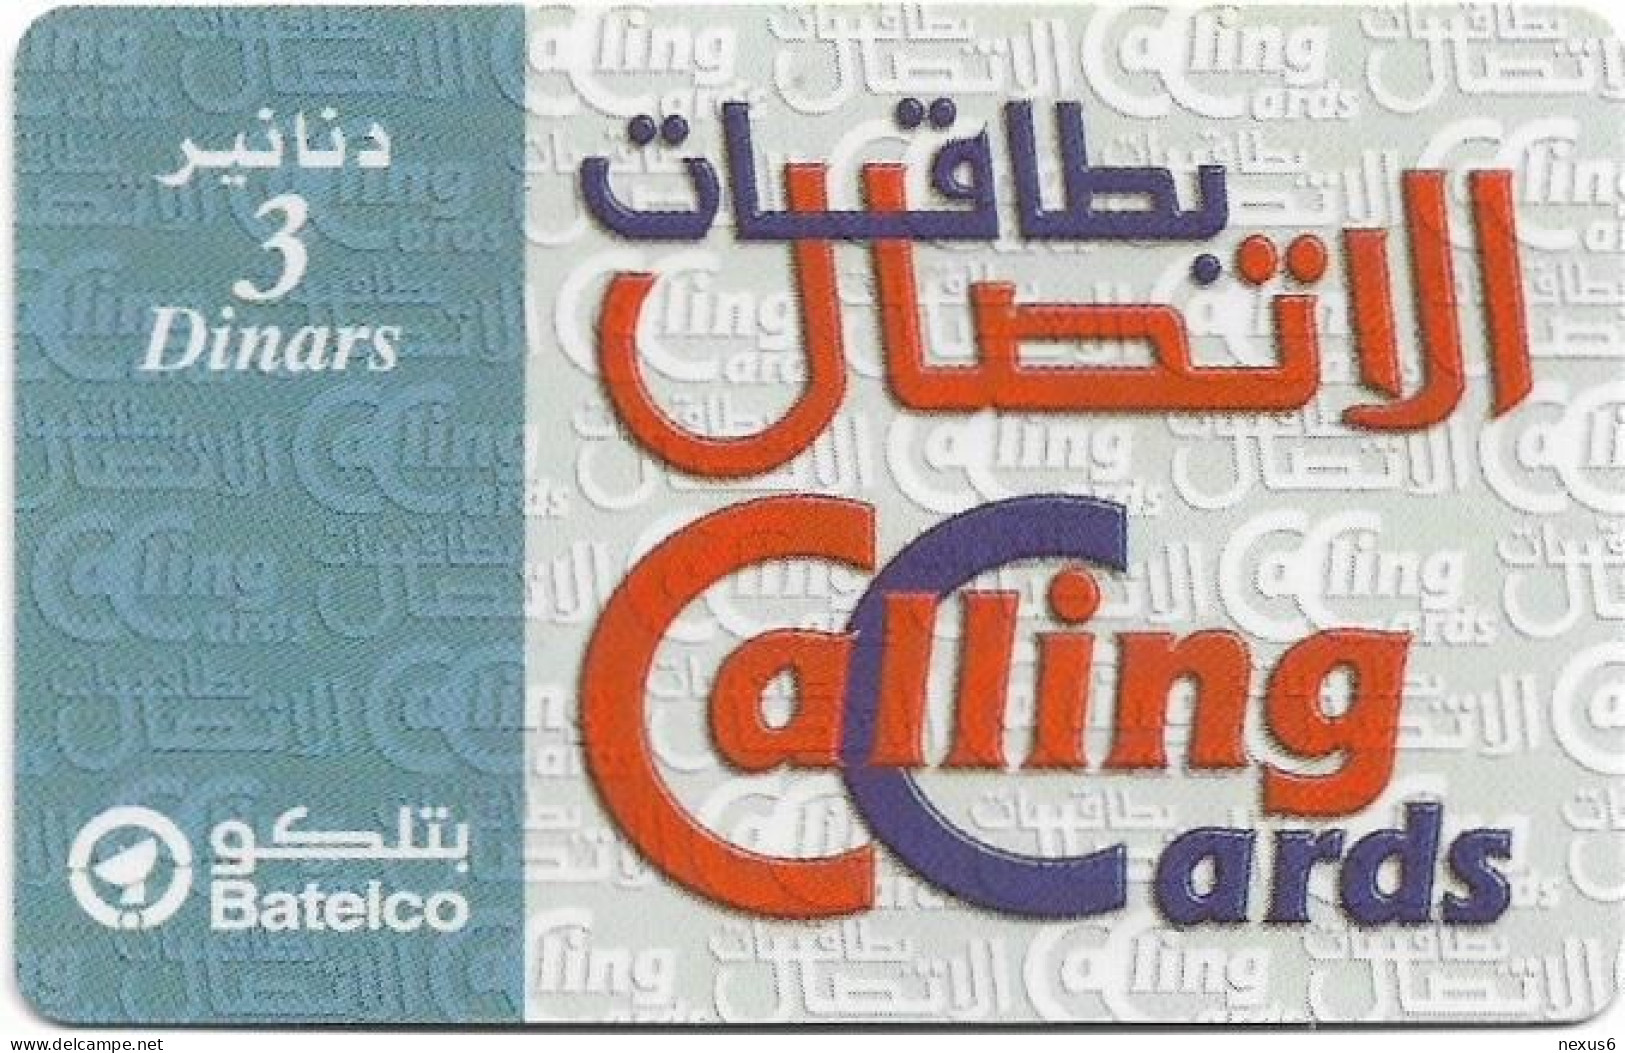 Bahrain - Batelco - Calling Cards (Light Blue), 3BD Prepaid Card, Used - Bahrein